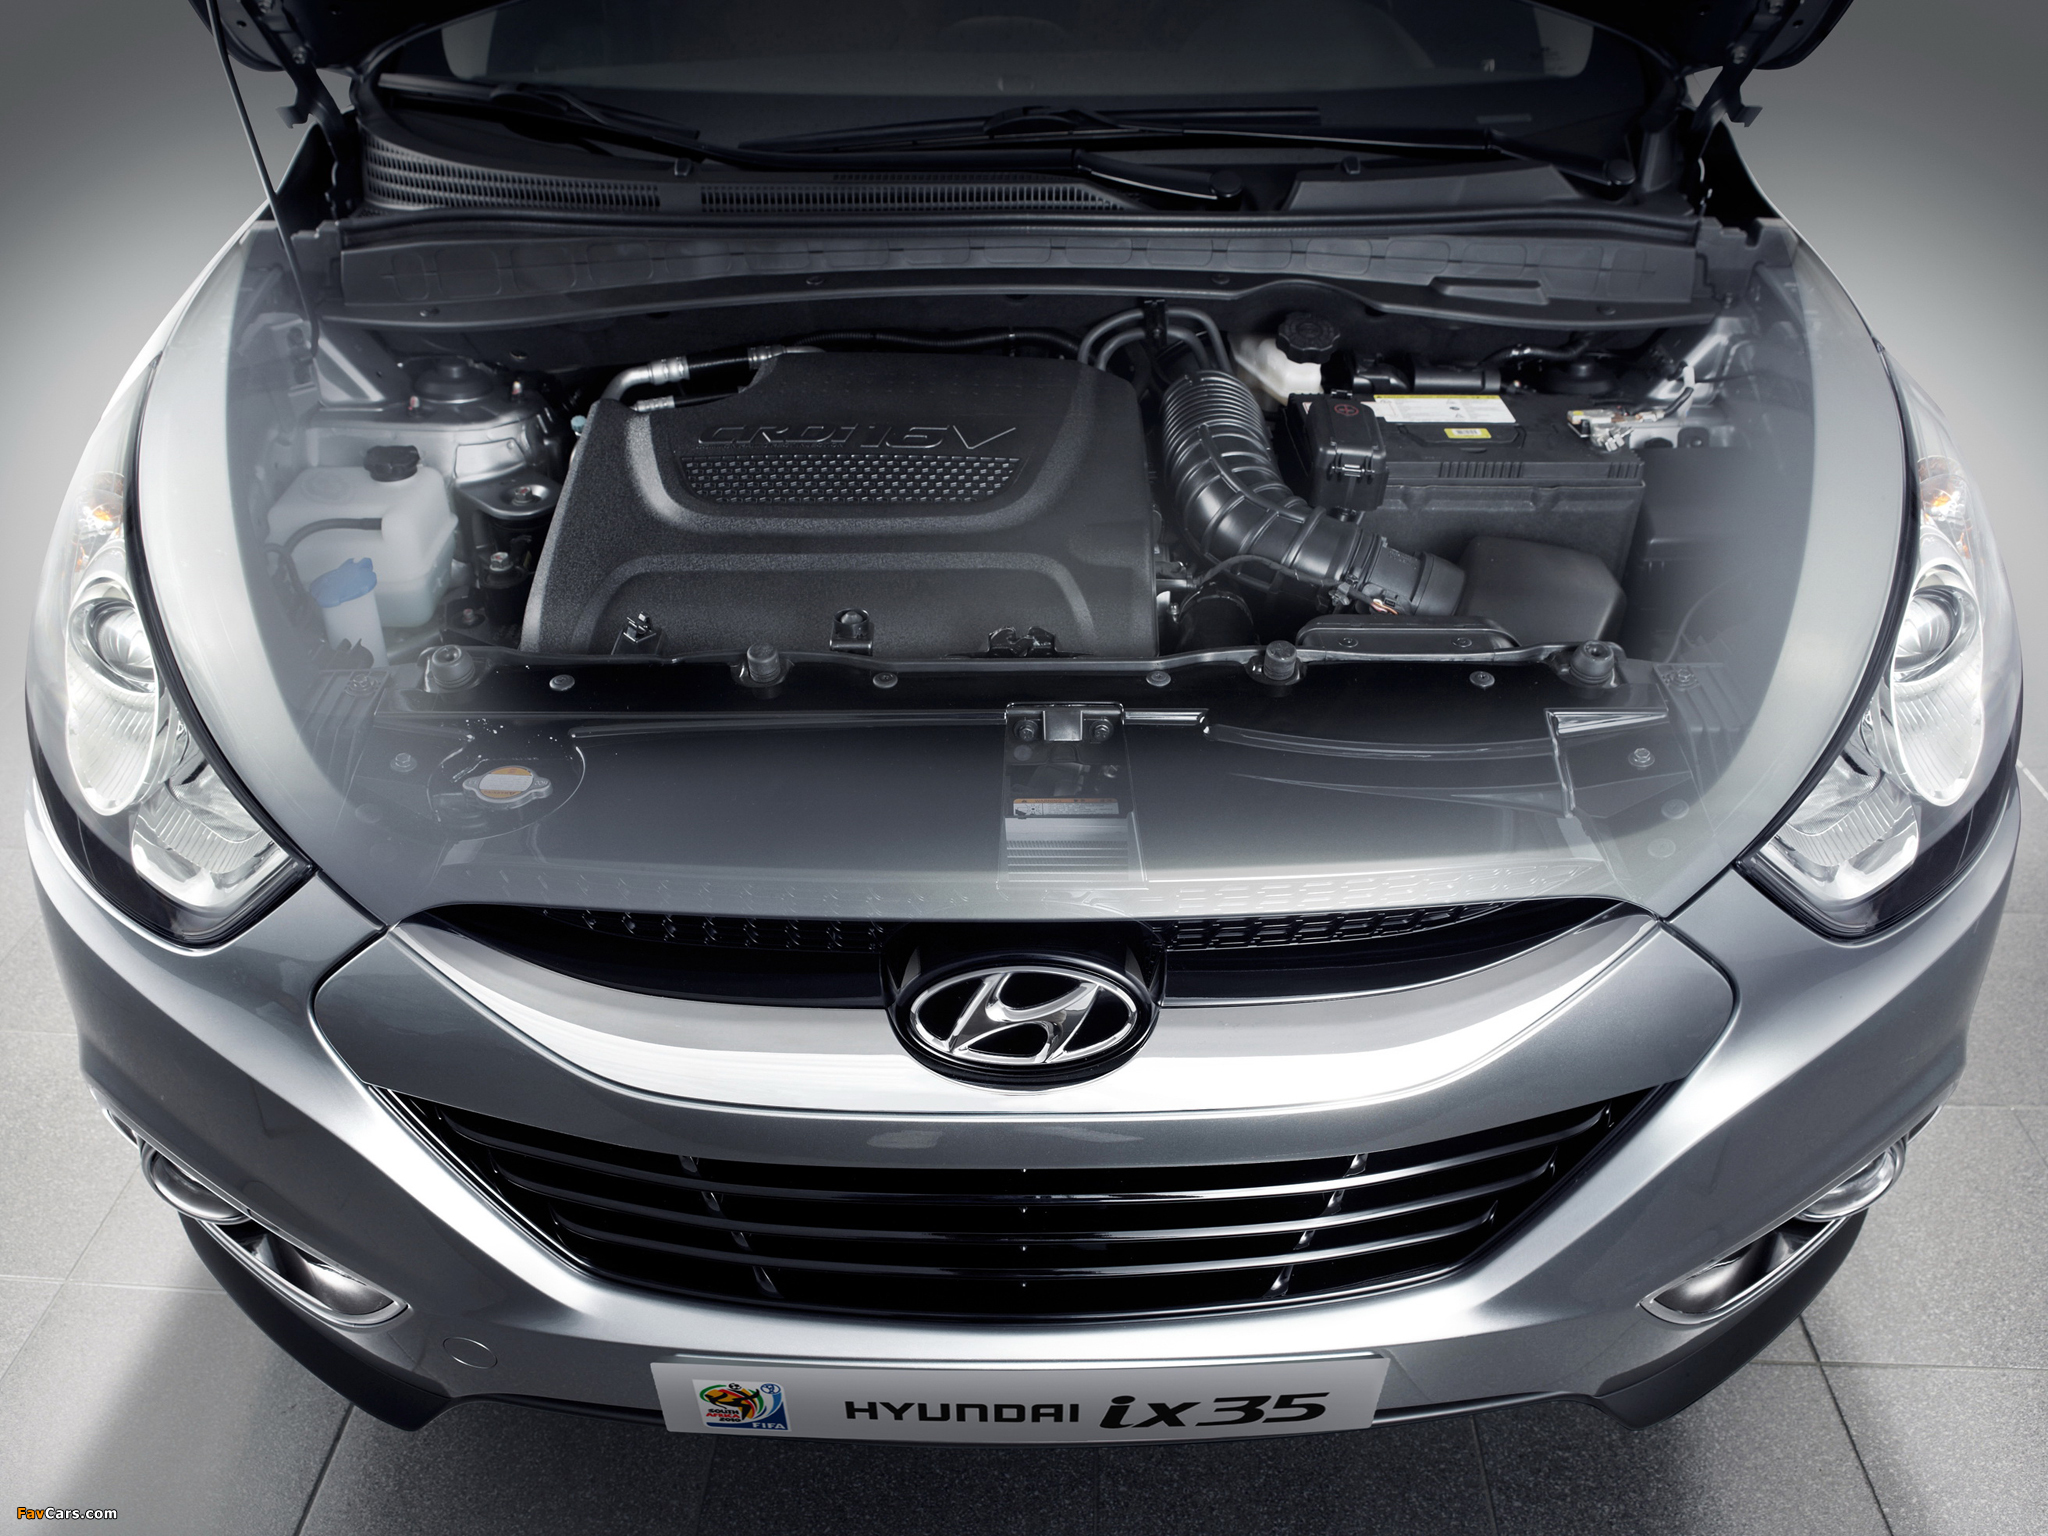 Ремонт двигателя хендай ix35. Hyundai ix35 двигатель 2.0. Hyundai ix35 под капотом. Двигатель Хендай ix35. Hyundai ix35 двигатель дизель.